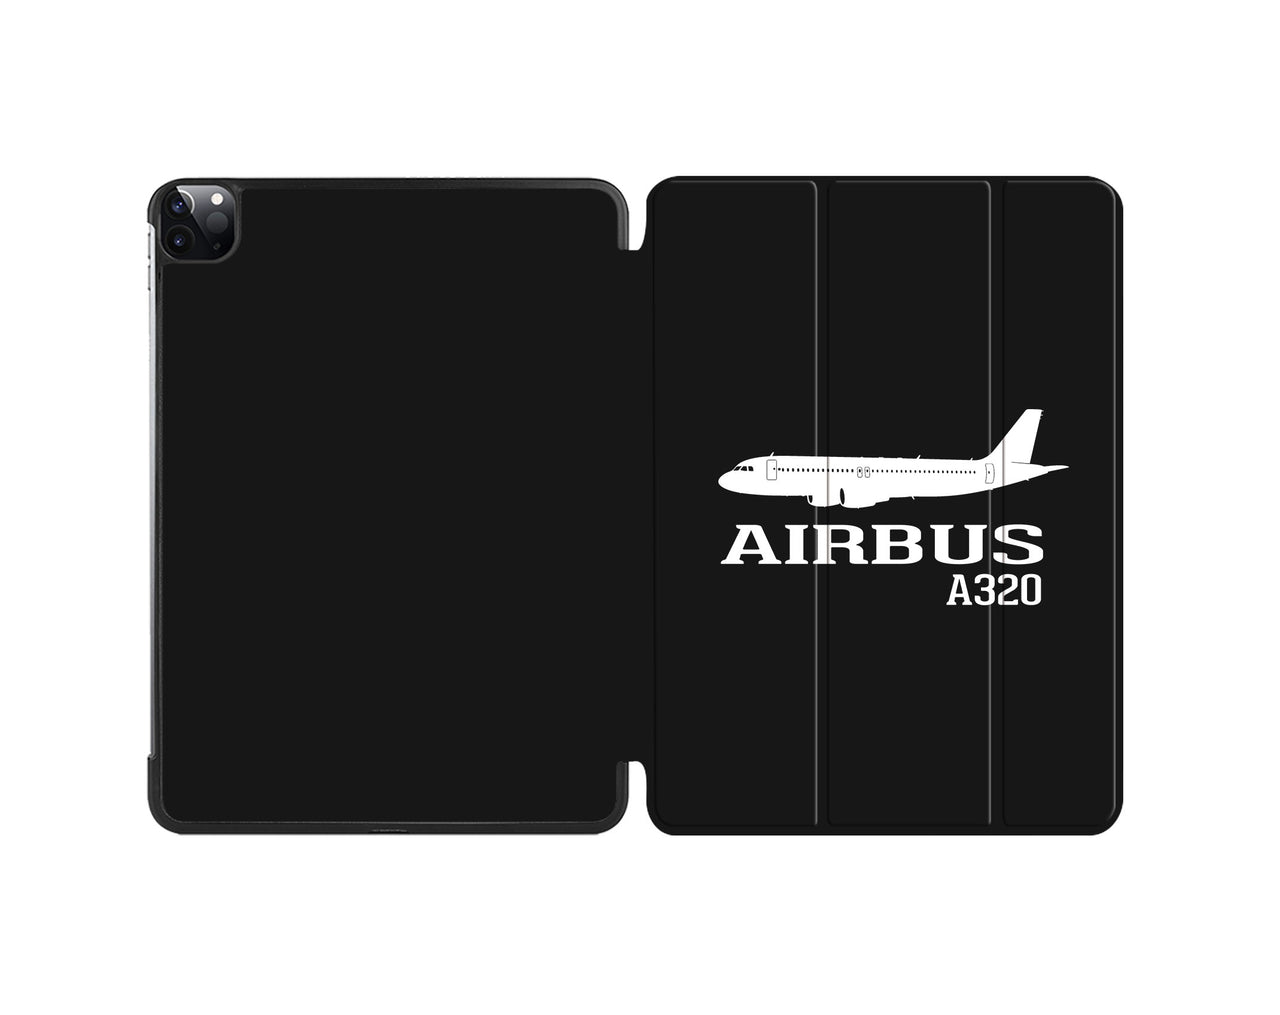 Airbus A320 Printed Designed iPad Cases